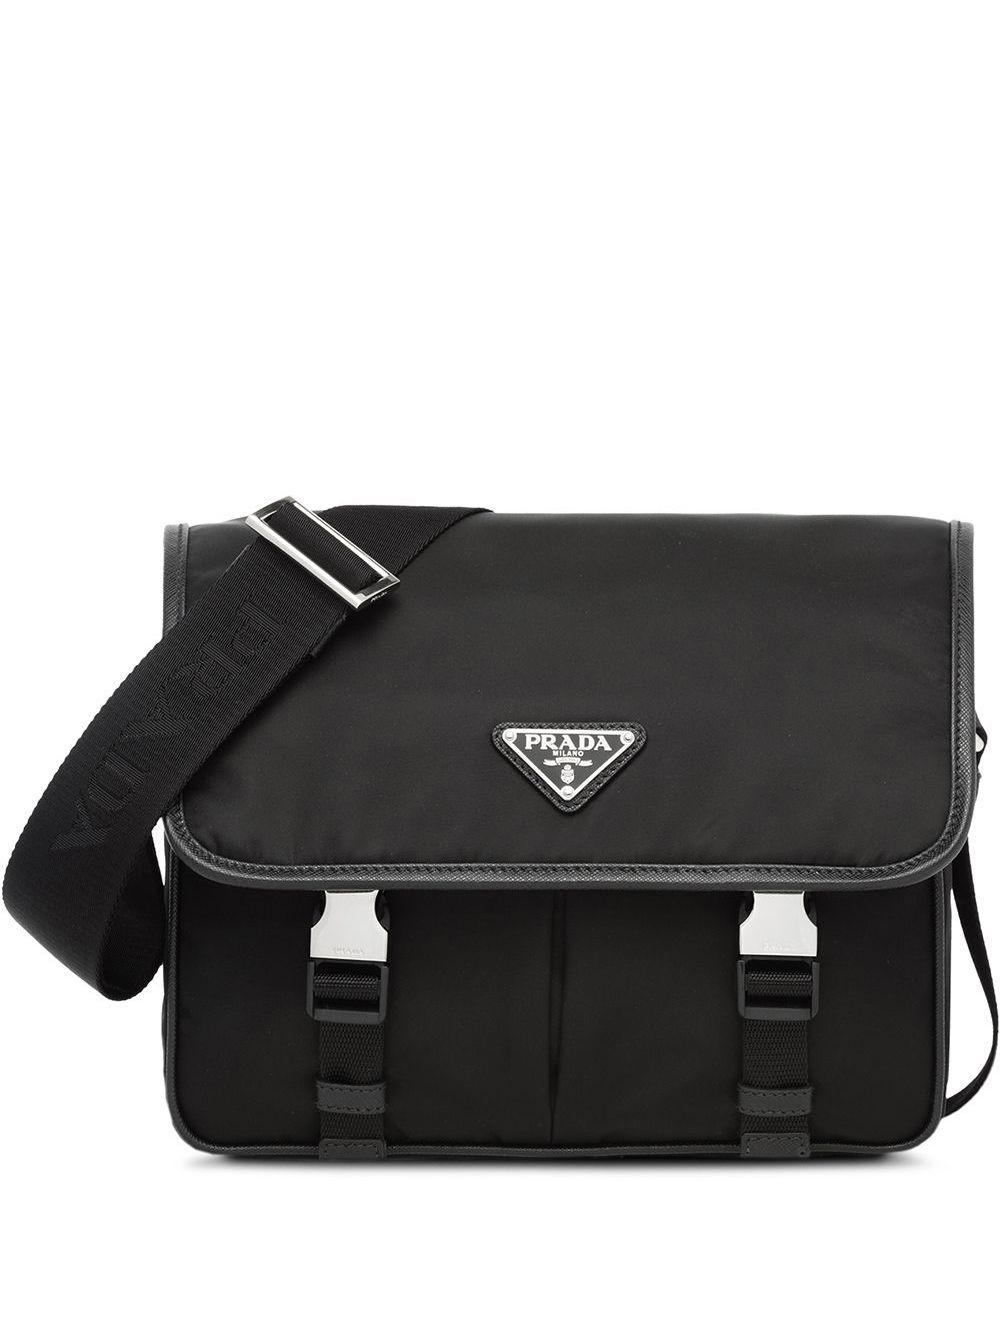 Prada Leather Crossbody Messenger Bag in Black for Men | Lyst